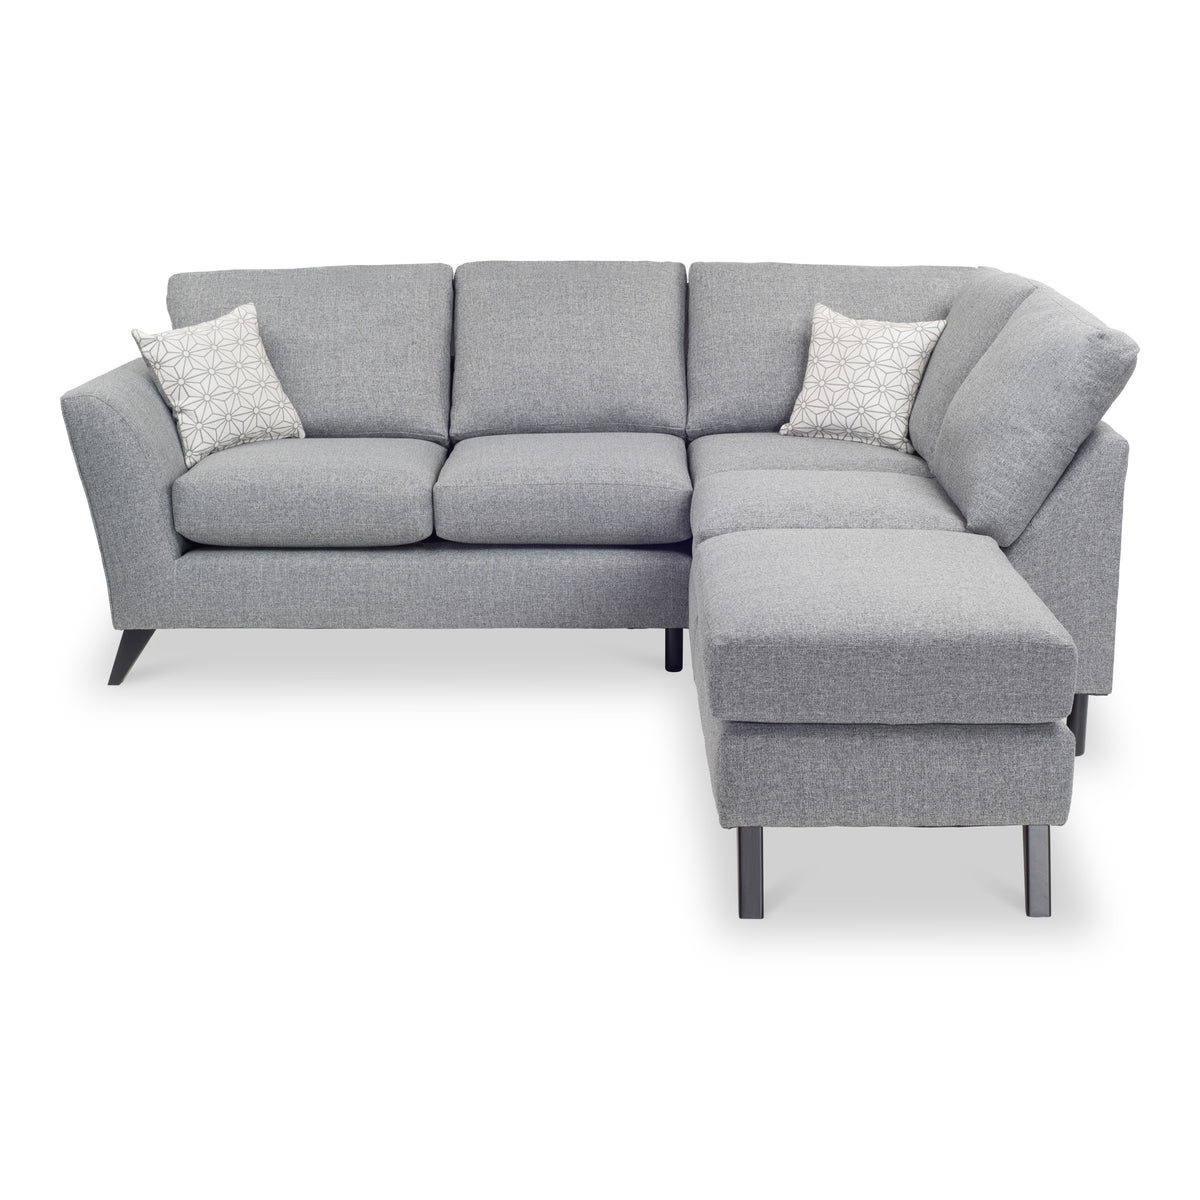 Geo Corner Sofa in Silver by Roseland Furniture